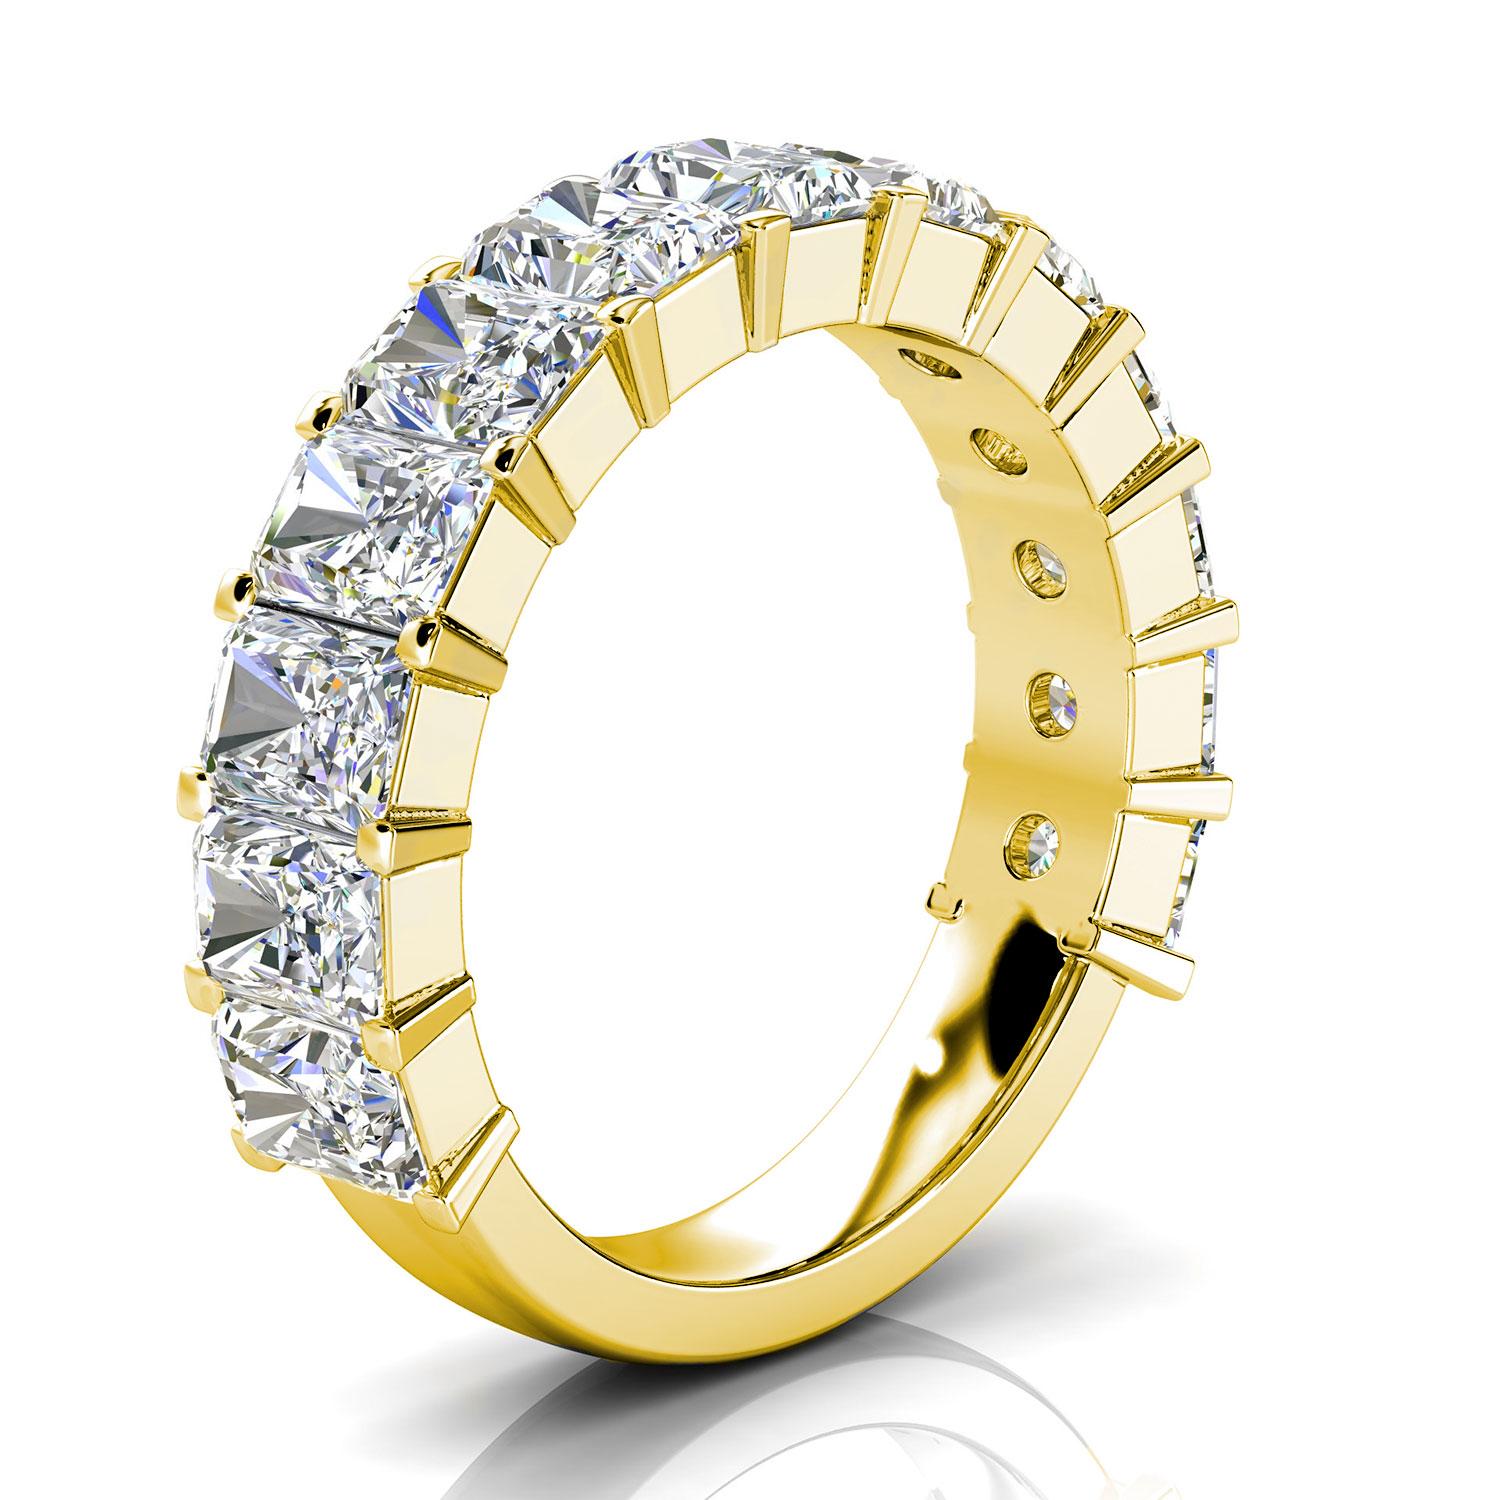 Diese Royalty Ring verfügt über dreizehn (13) Radiant Shape Diamanten Prong- Set etwa 1/2 ein Karat jeder auf 3/4 eines 3,6 mm Schaft. Es ist ein Gesprächsstoff! Erleben Sie den Unterschied persönlich!

Einzelheiten zum Produkt: 

Zentrum Edelstein